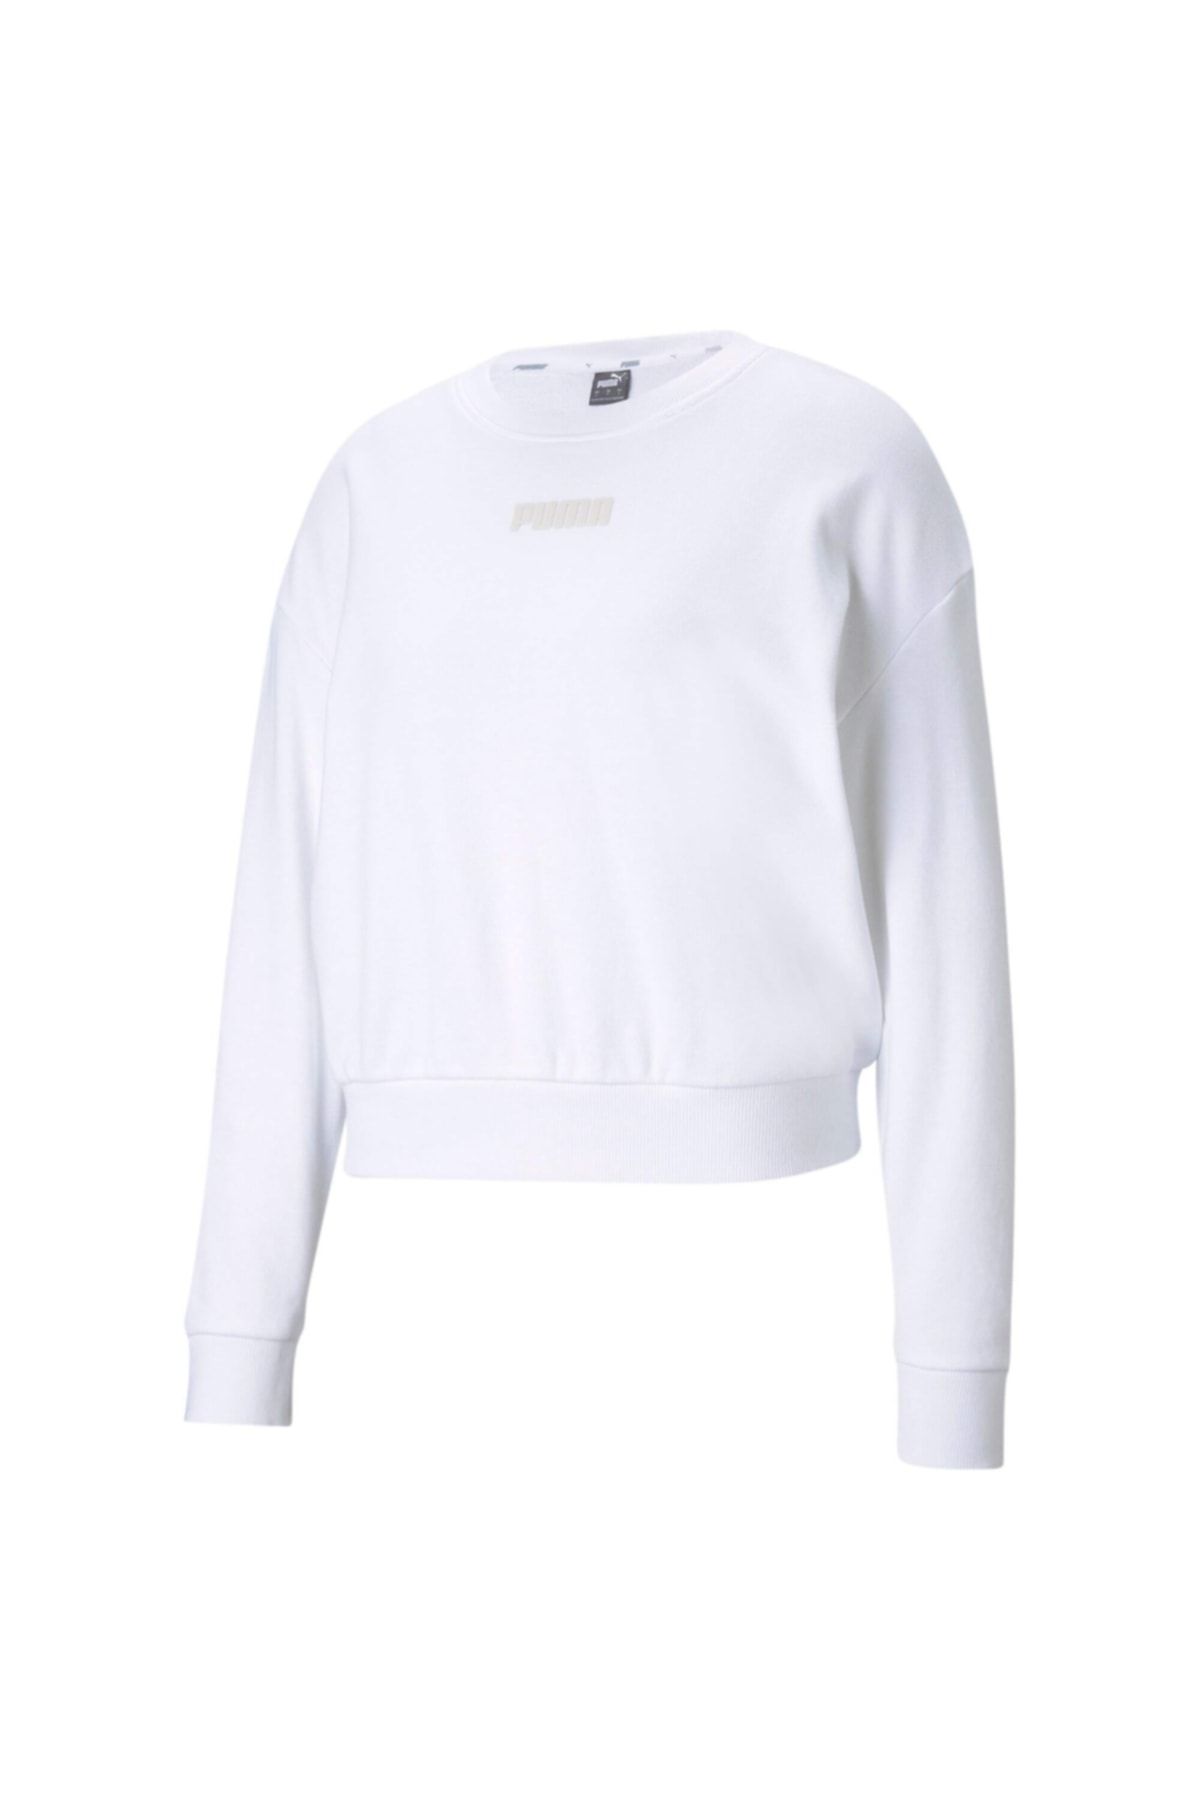 Puma MODERN BASICS CREW TR Beyaz Kadın Sweatshirt 101085567